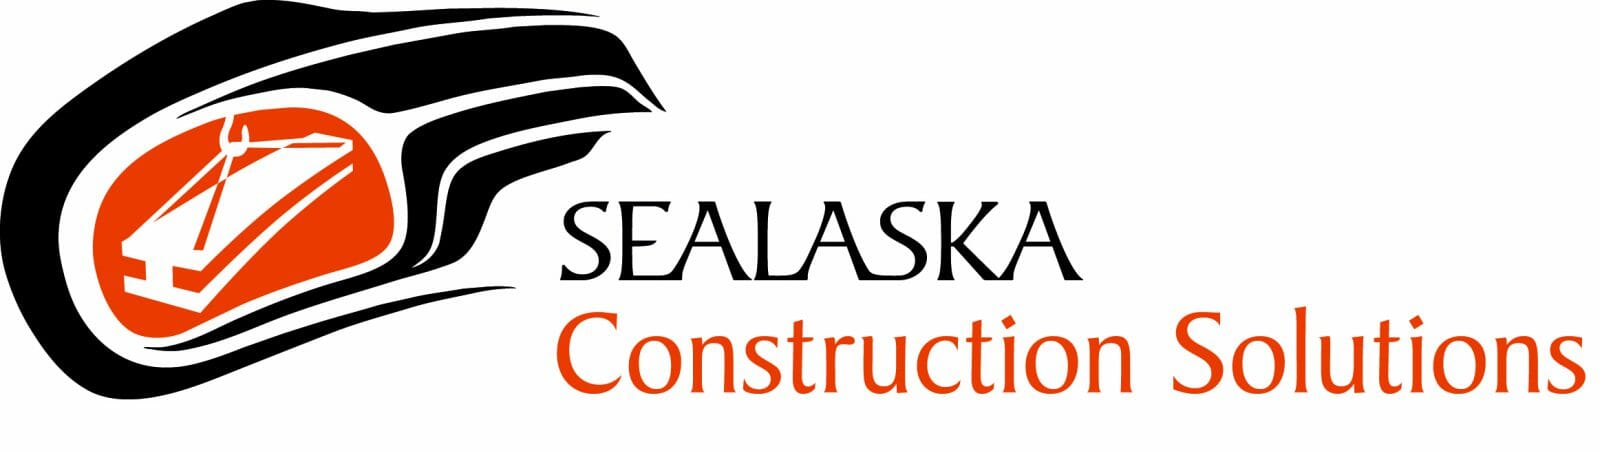 Sealaska environmental services jobs